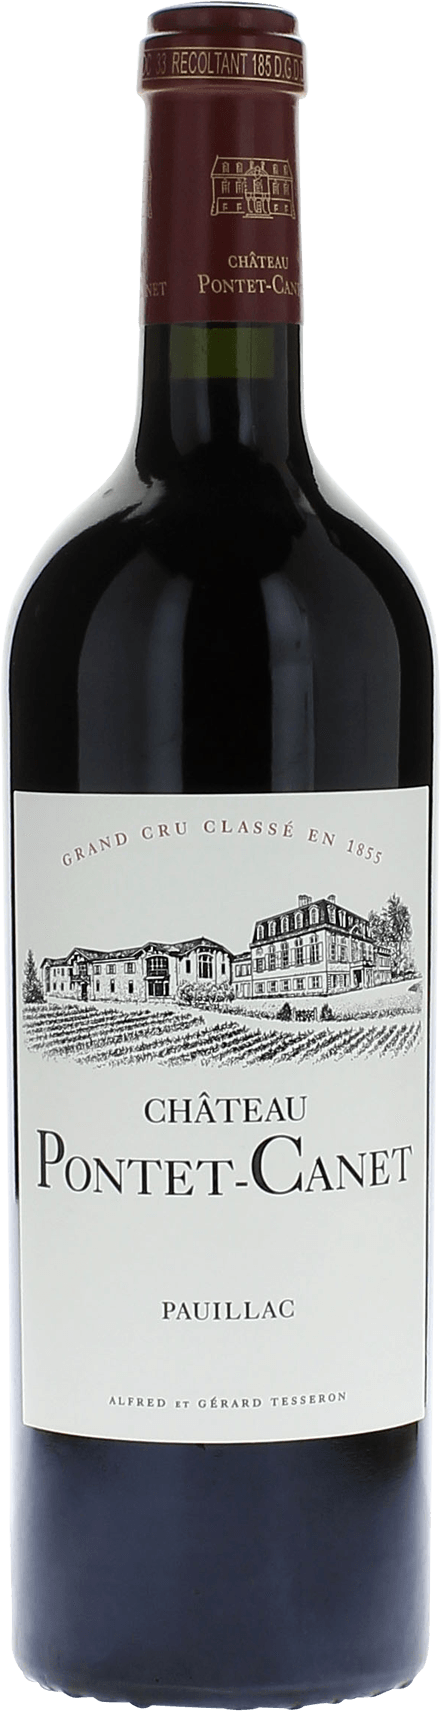 Pontet canet 1996 5me Grand cru class Pauillac, Bordeaux rouge